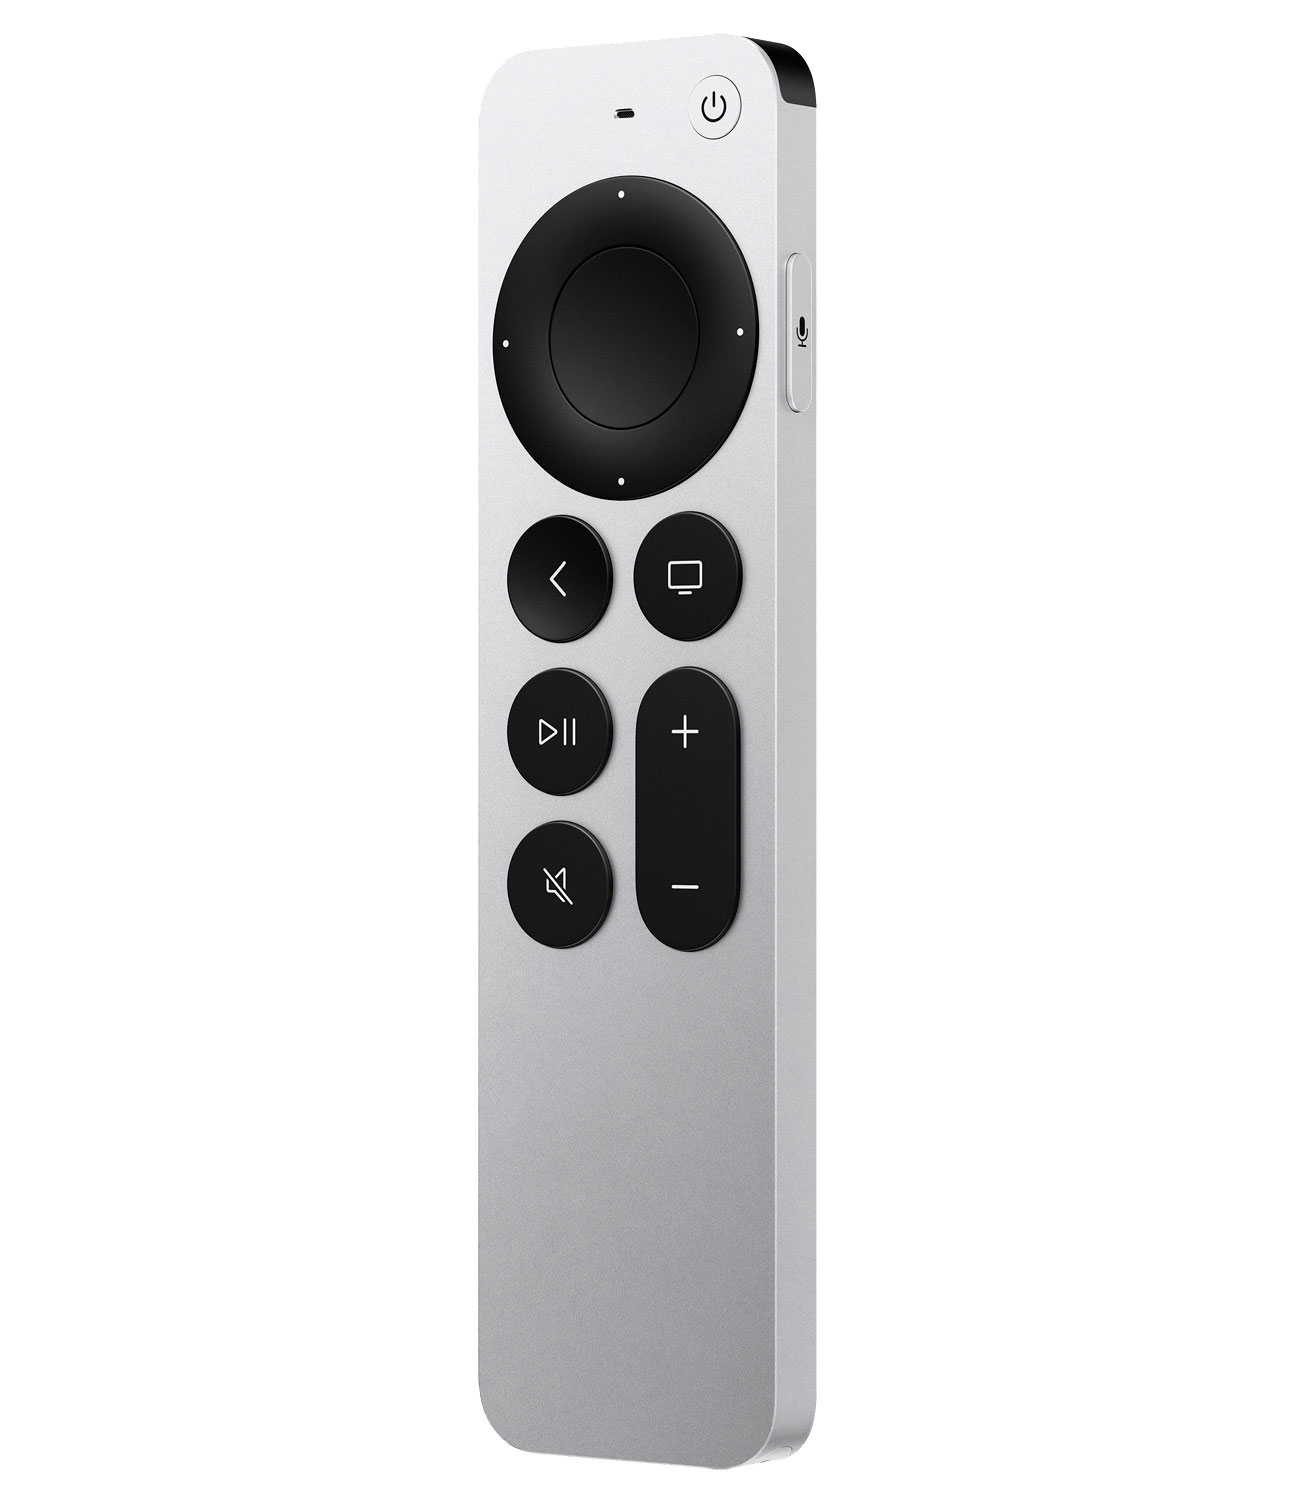 Rond en rond Bedrijf amplitude De nieuwe Apple TV 4K heeft ook een nieuwe afstandsbediening